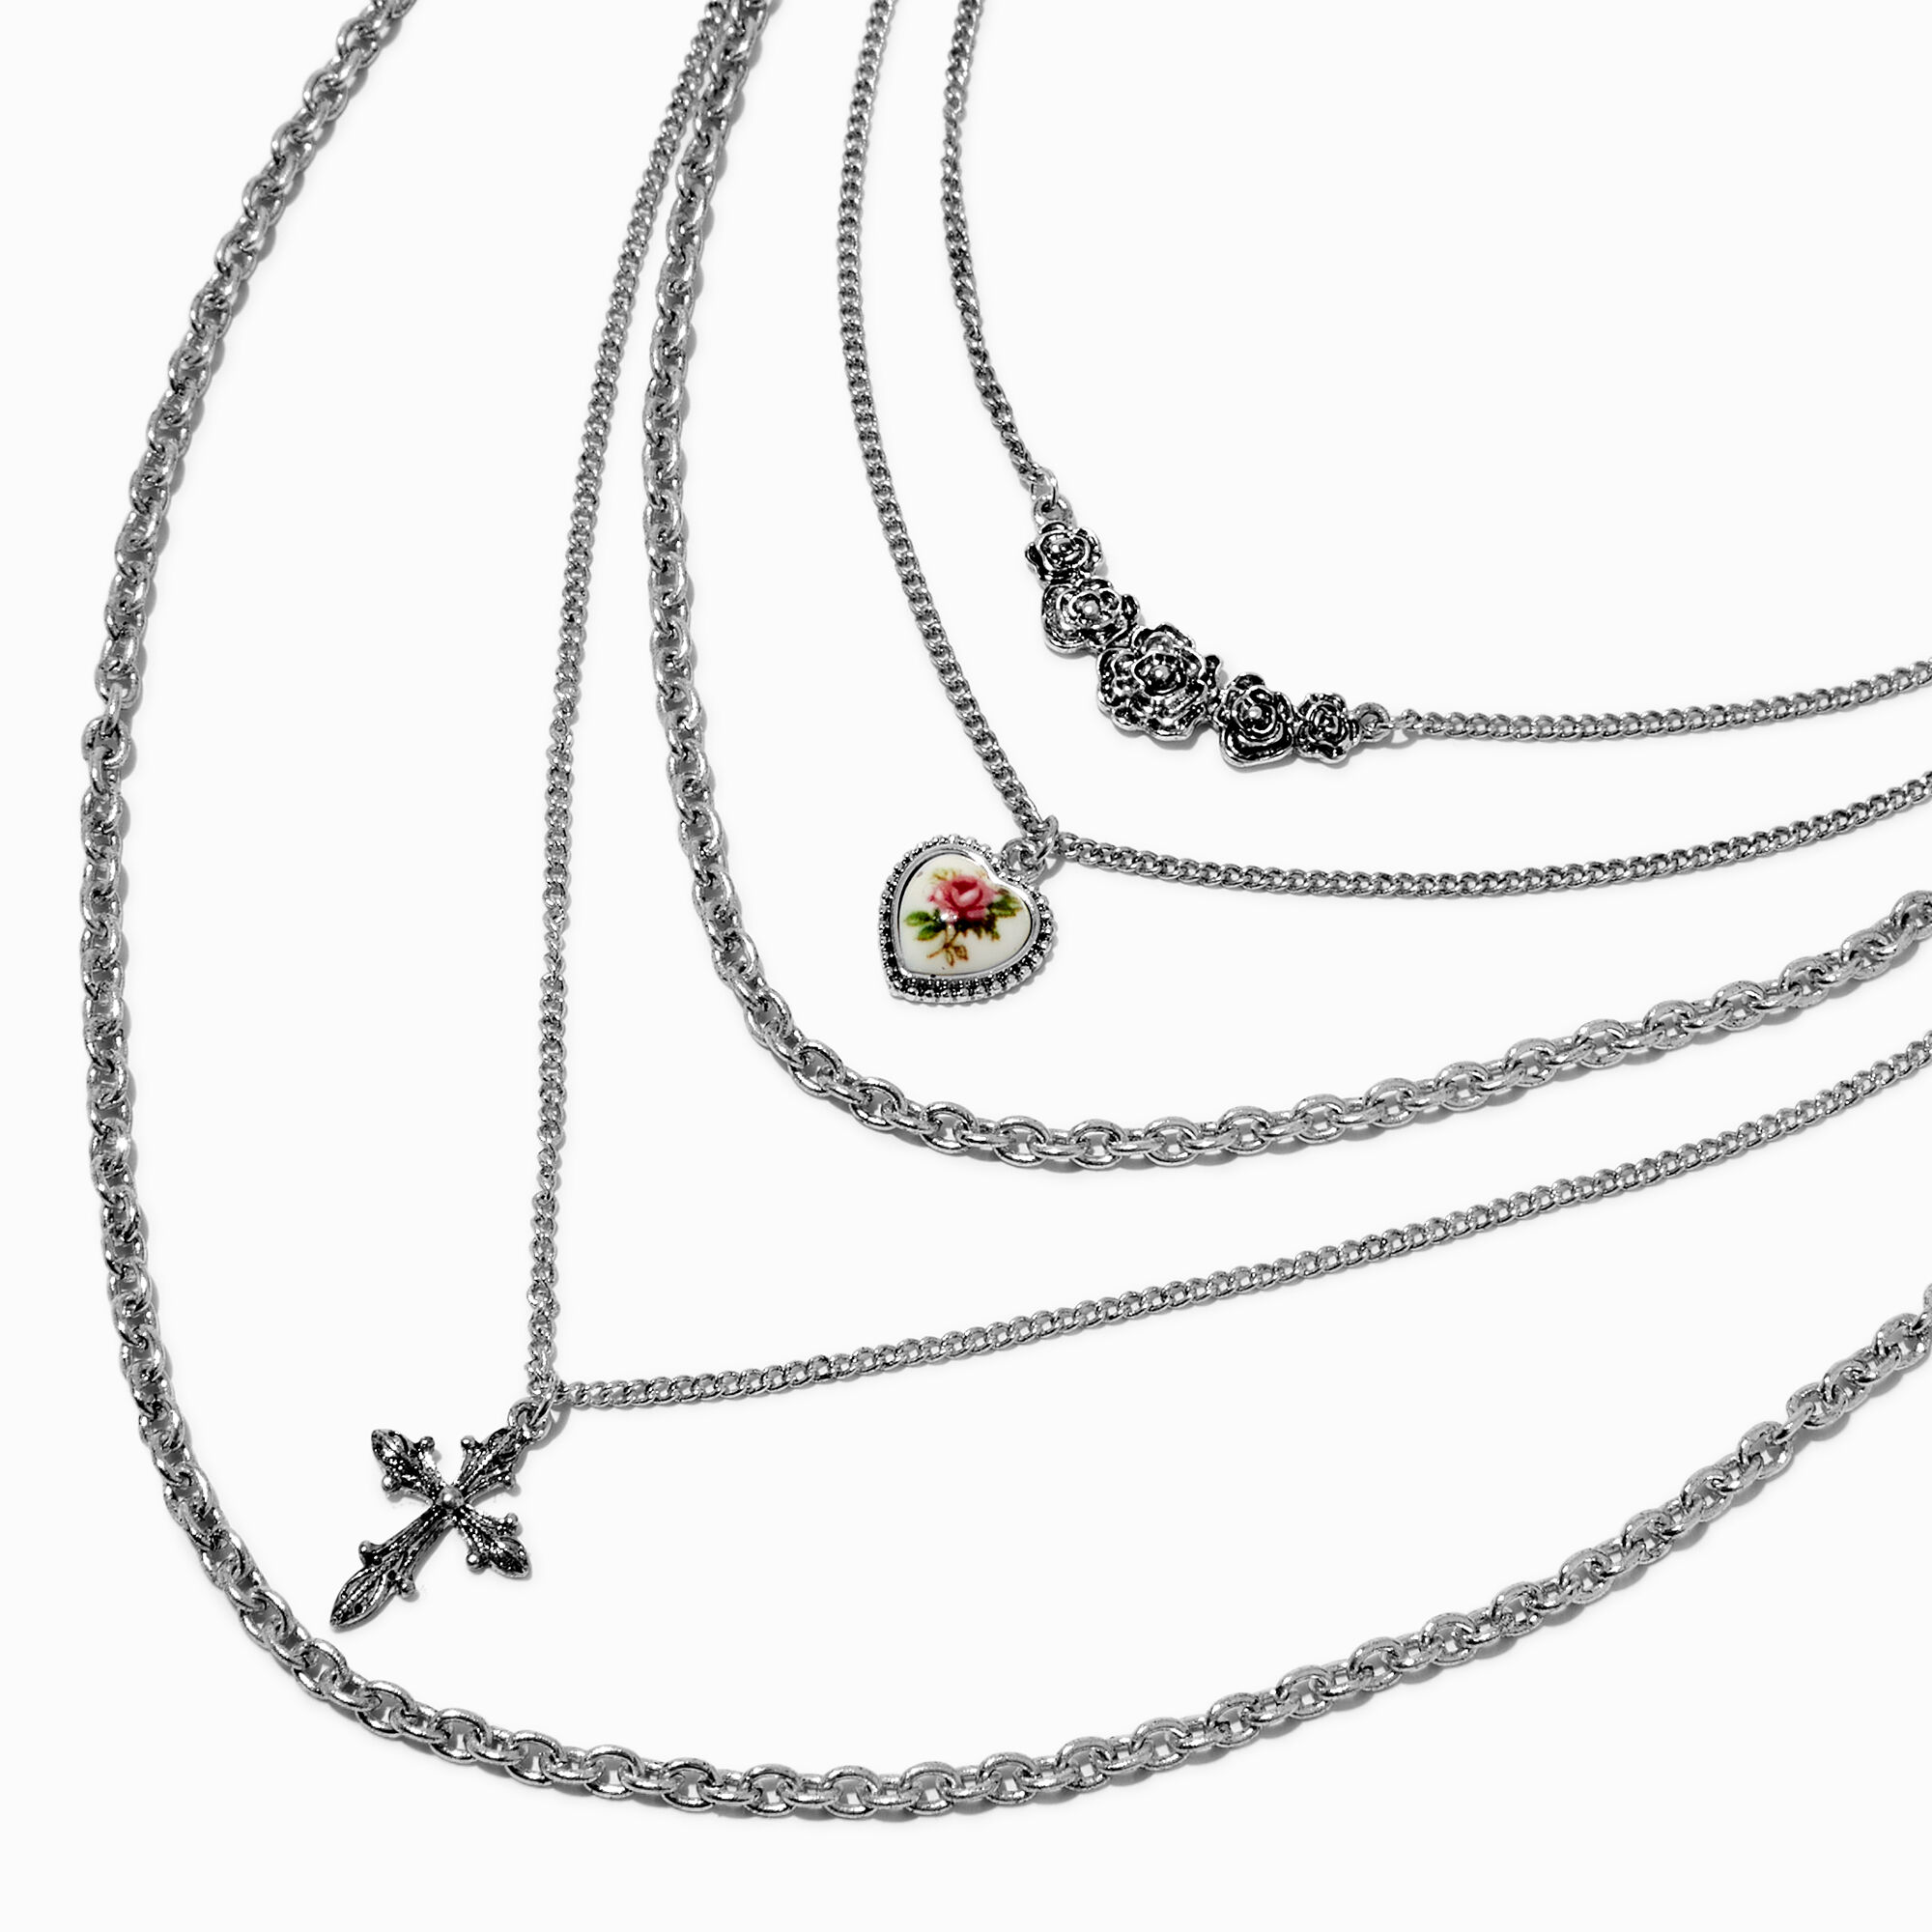 Claire's Collier multi-rangs de chaîne croix et rose couleur argentée